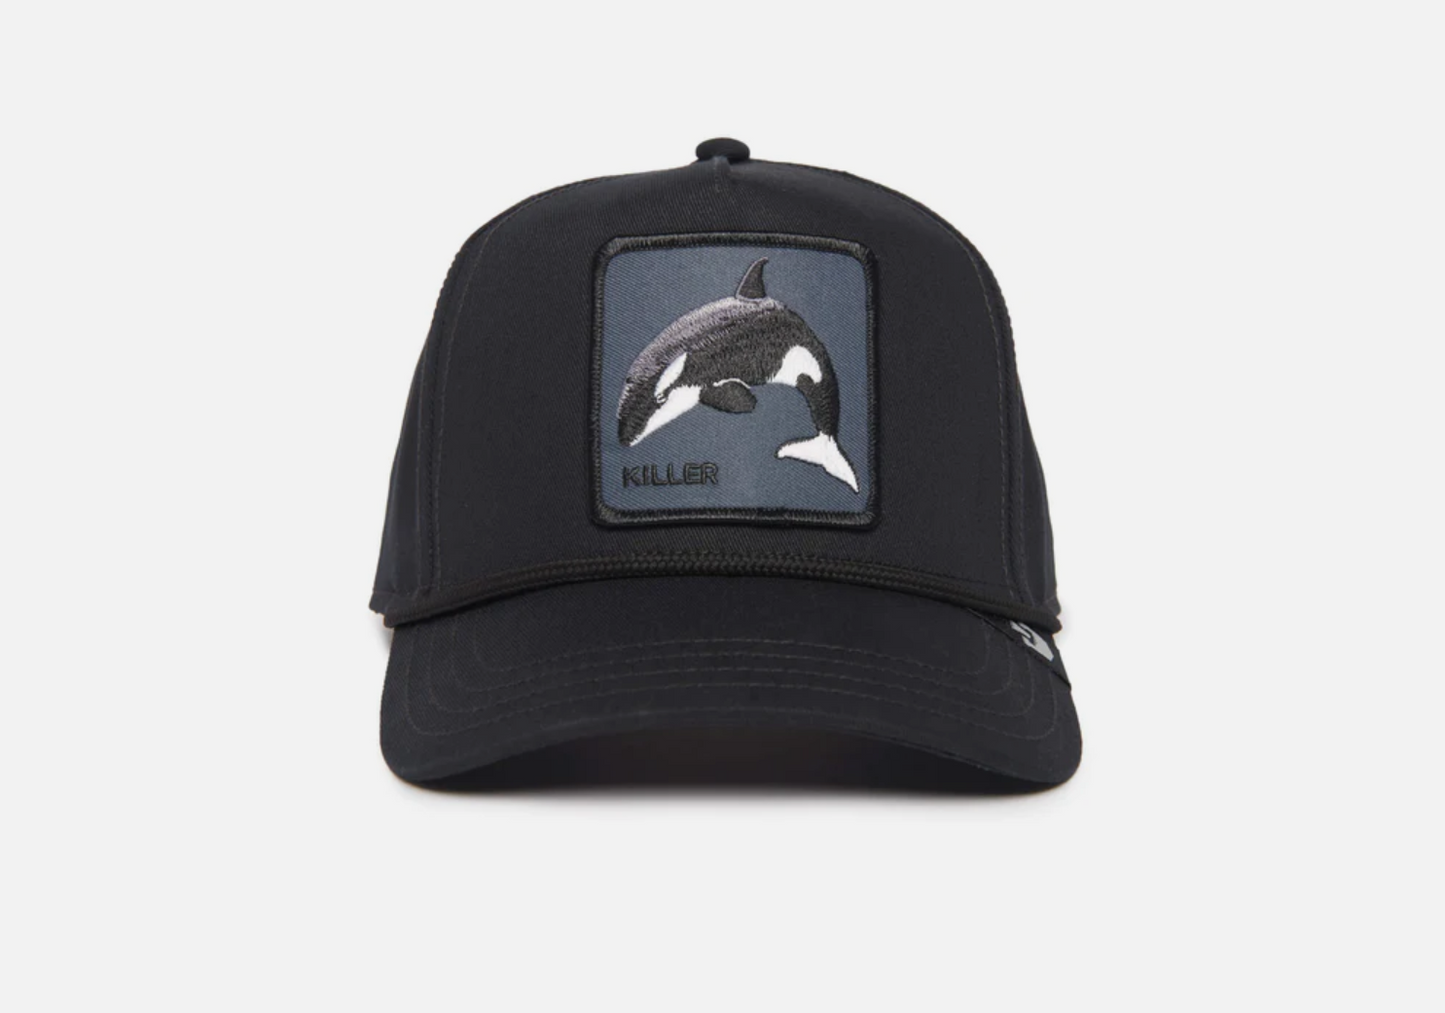 Killer Whale Trucker Hat - Goorin Bros